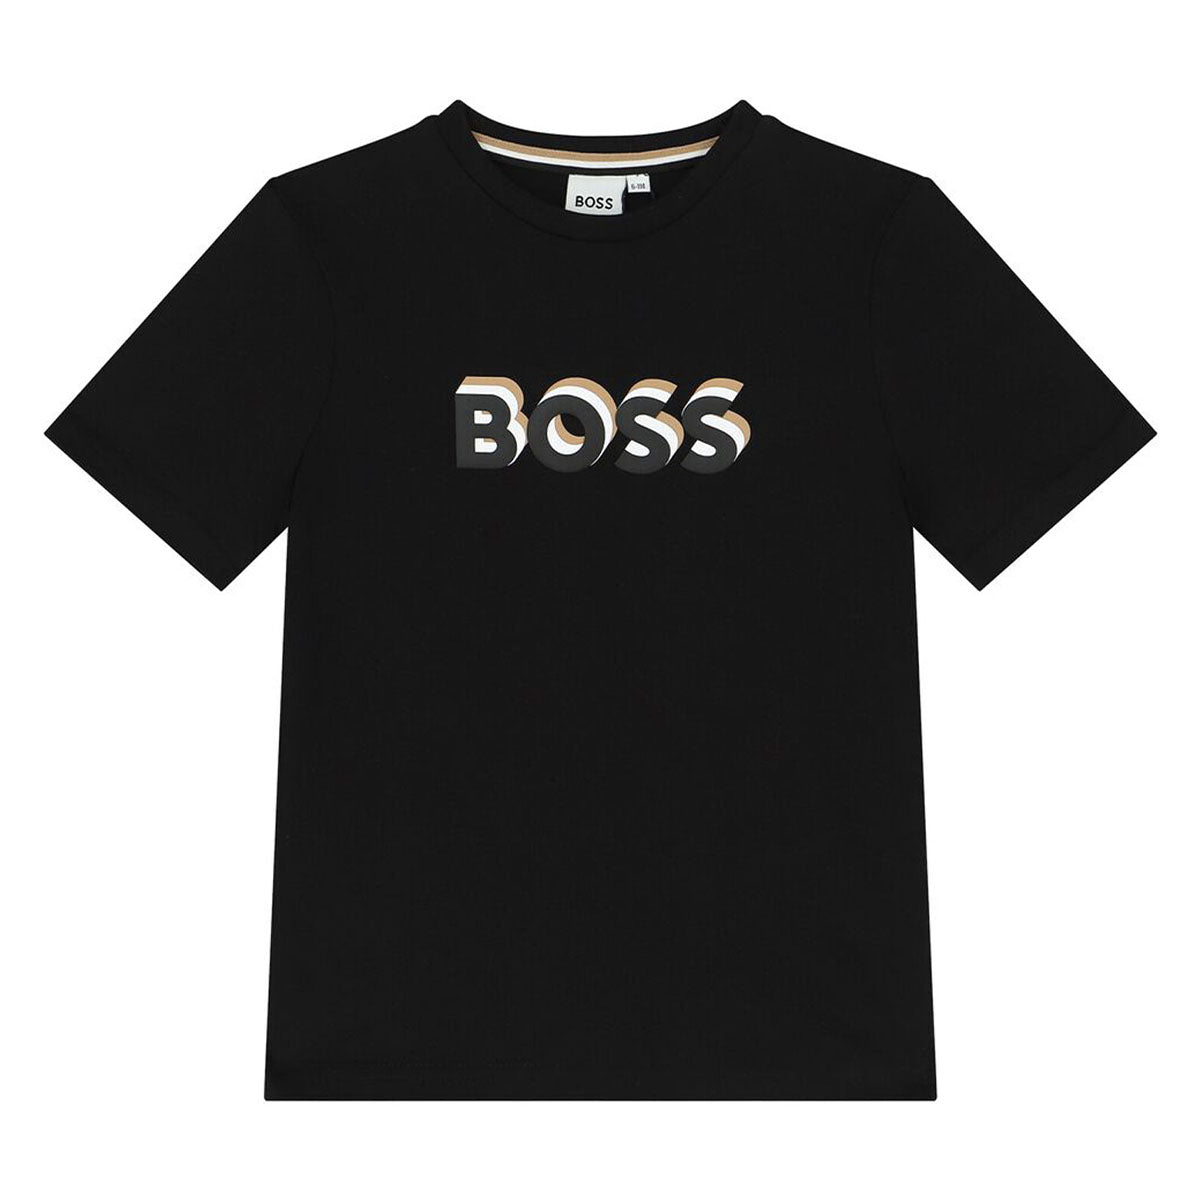 חולצת טי שרט BOSS לוגו מוצלל לילדים